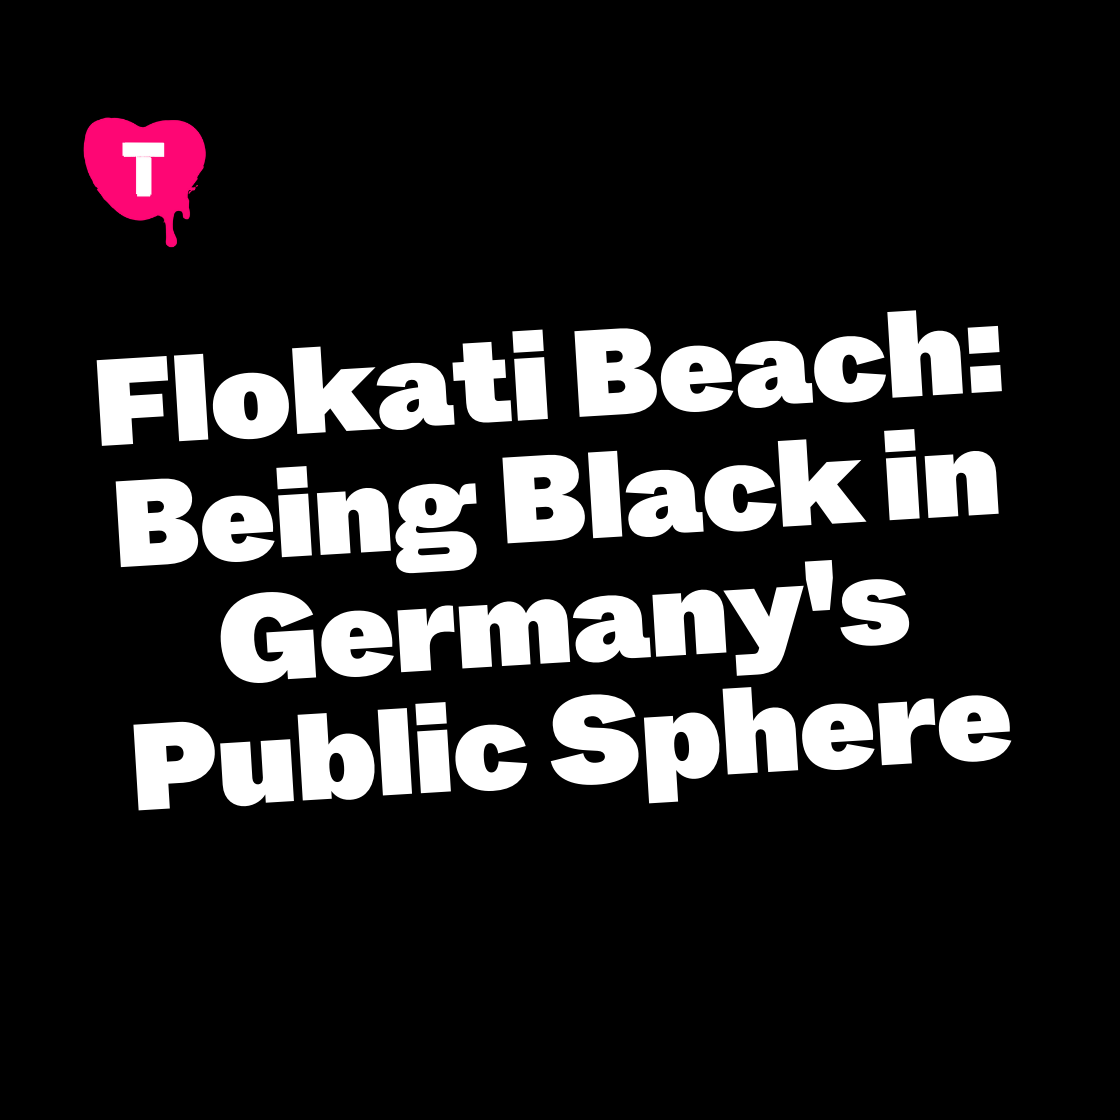 Flokati Beach: Being Black in Germany's Public Sphere